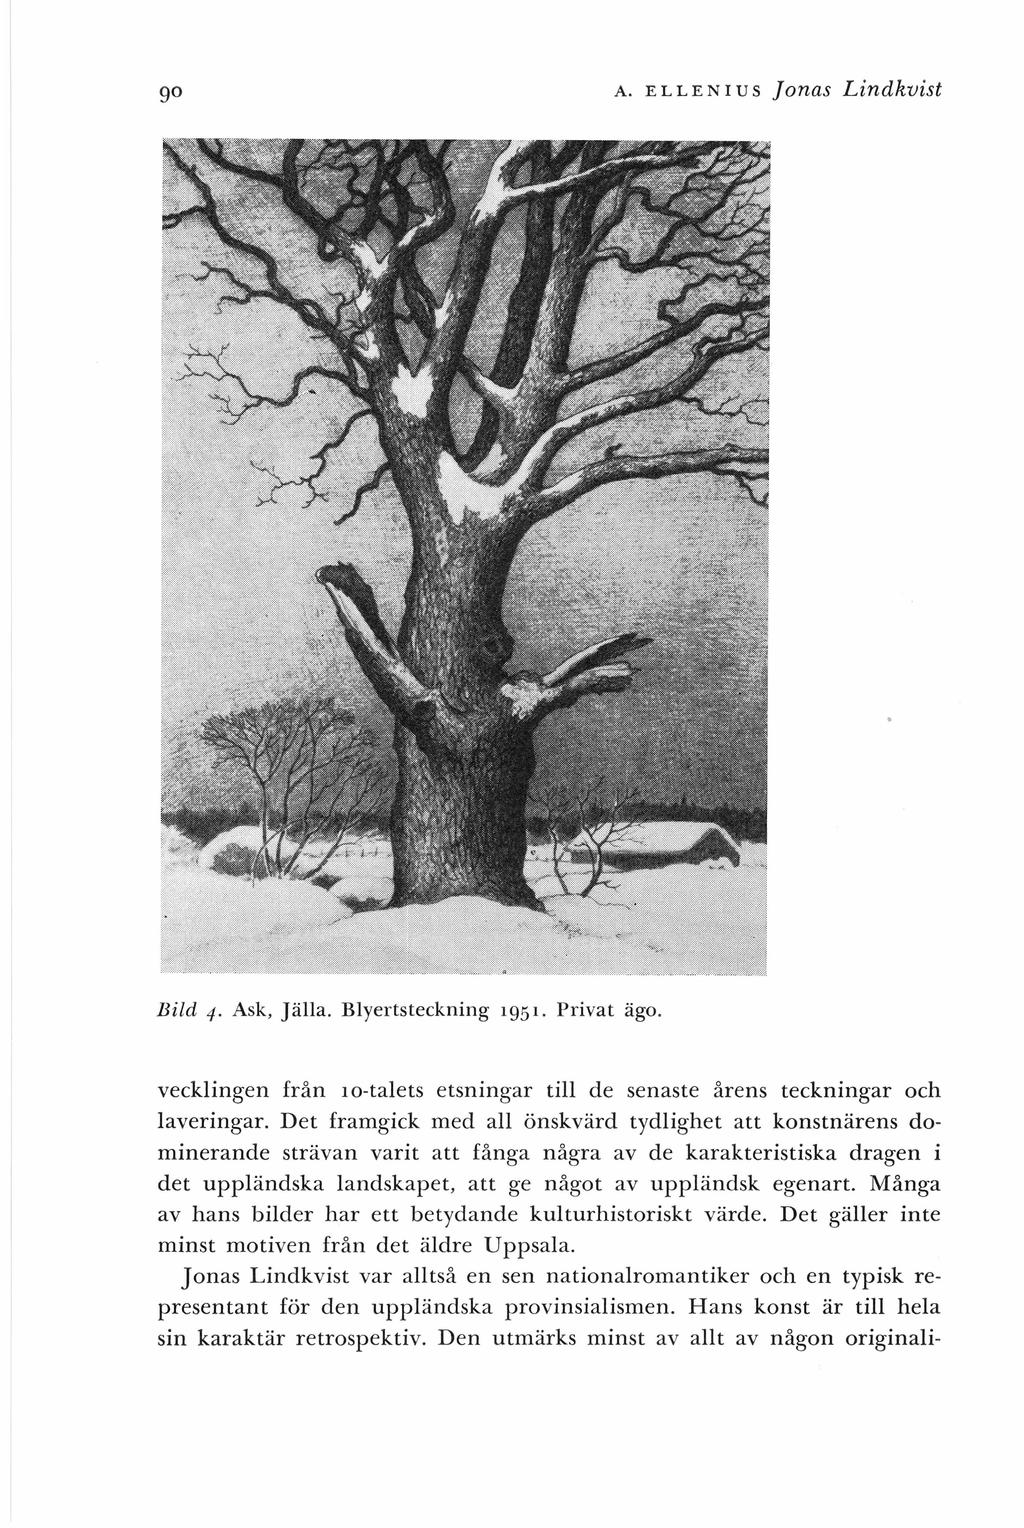 90 A. ELLENIUS Jonas Lindkvist Bild 4. Ask, Jälla. Blyertsteckning 1951. Privat ägo. vecklingen från JO-talets etsningar till de senaste årens teckningar och laveringar.